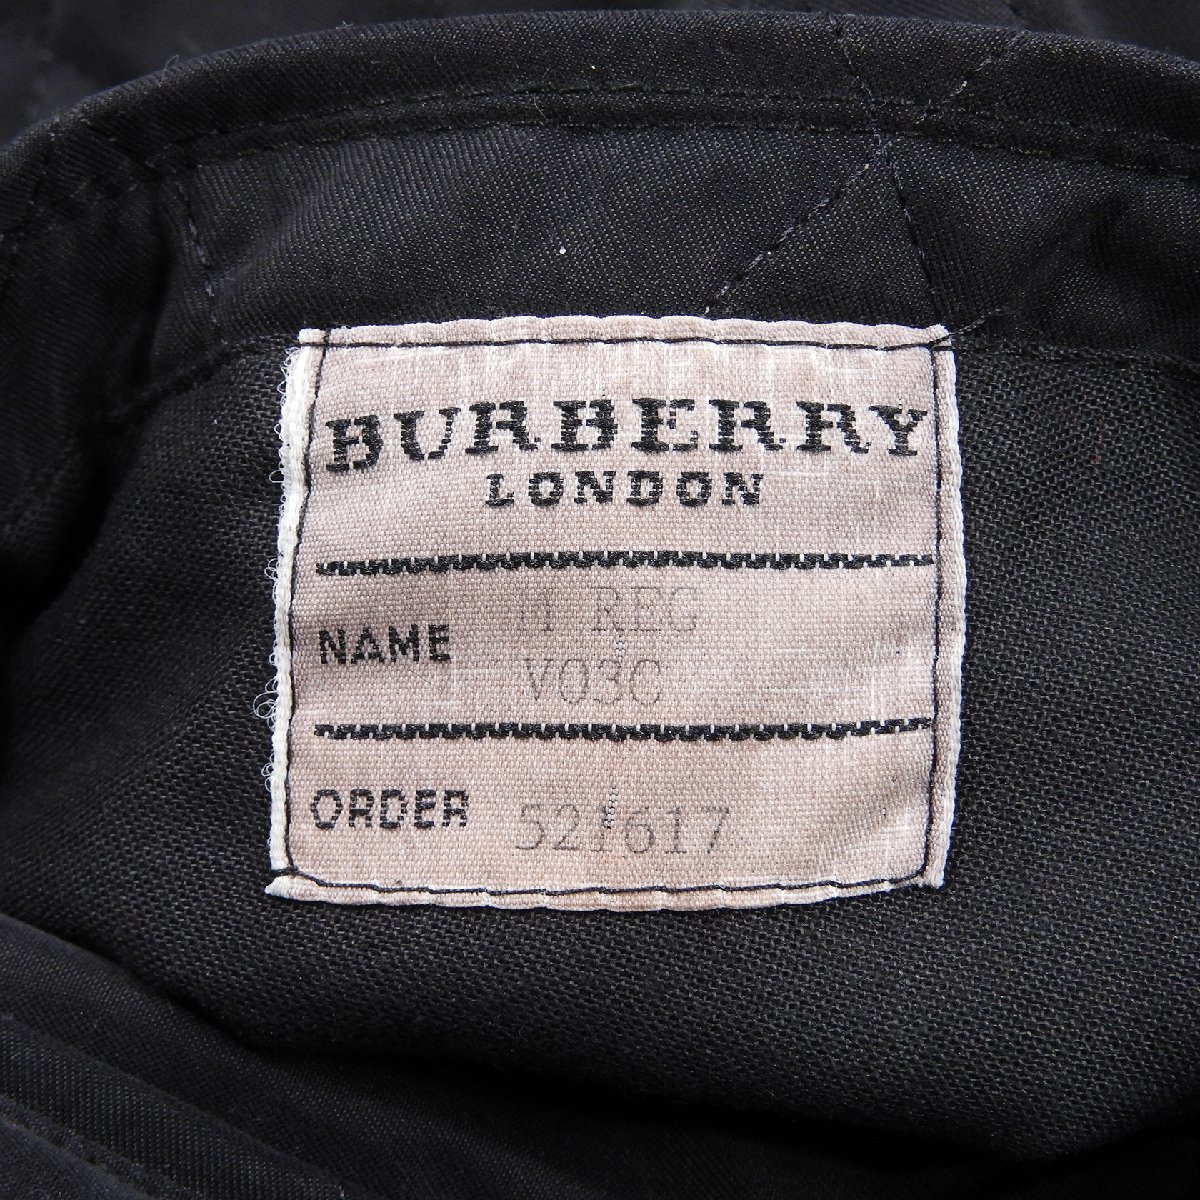 BURBERRY LONDON バーバリー ロンドン キルティングジャケット イングランド製 Size M #12579 カジュアル きれいめ コート アウター_画像5